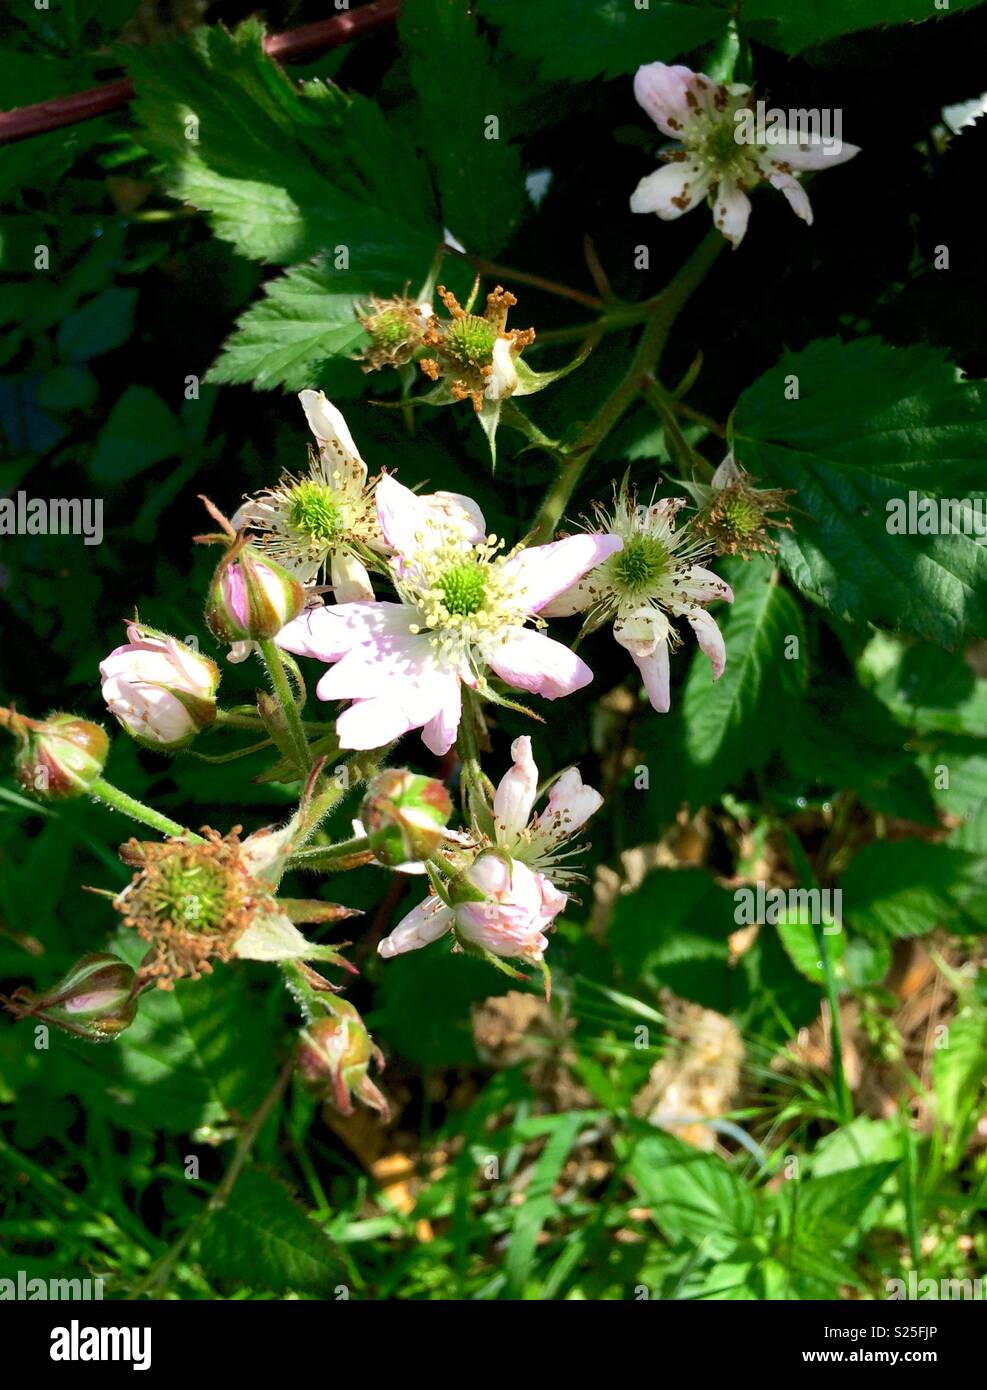 Blackberry in flower Stock Photo